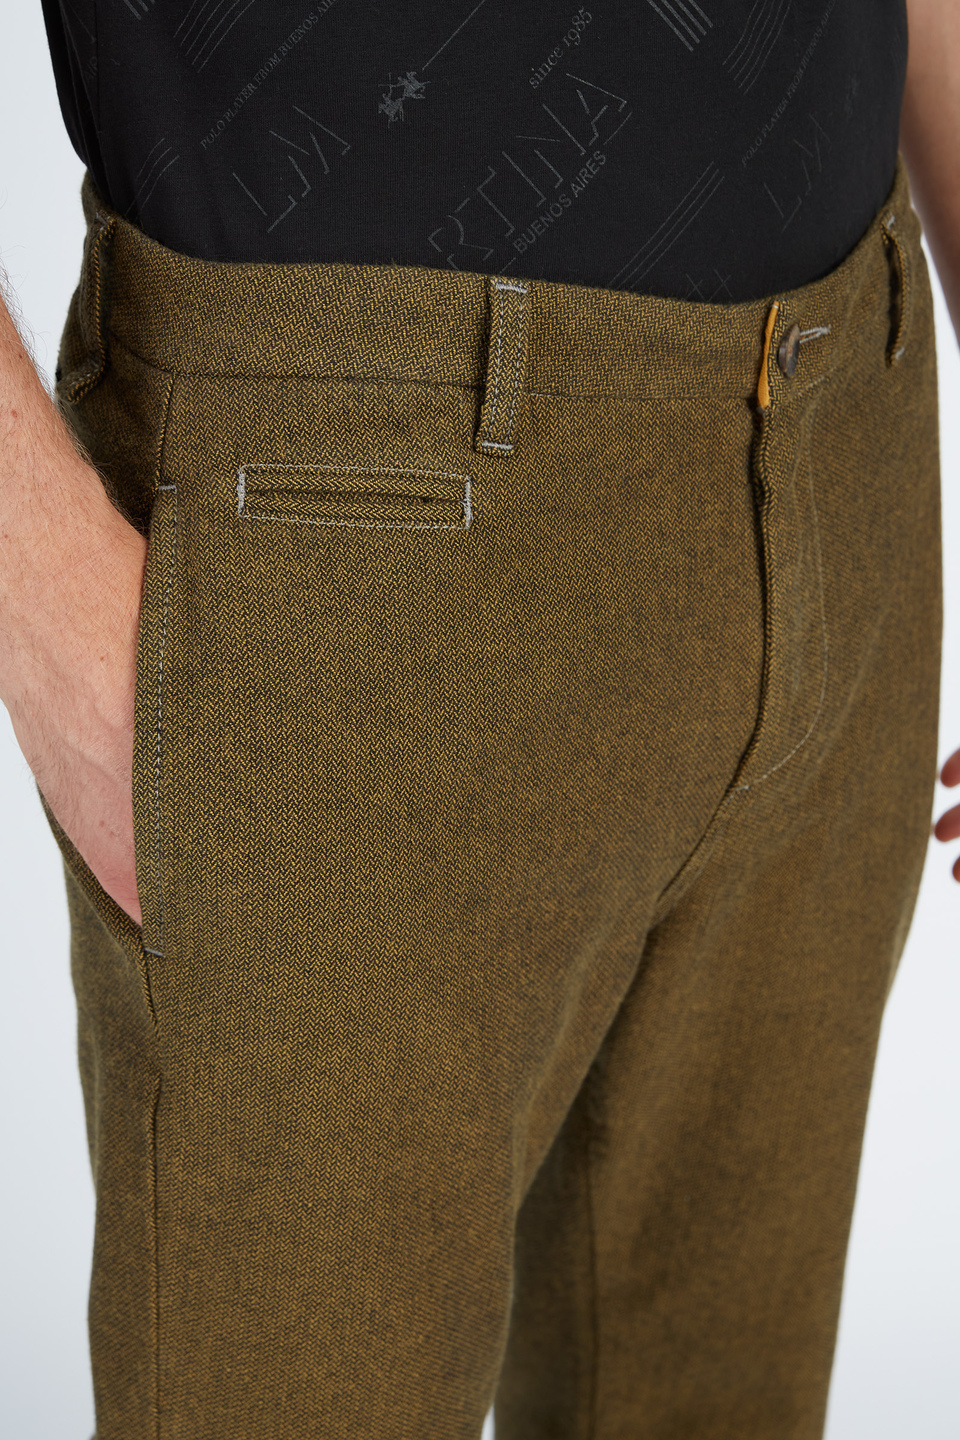 Men’s trousers 5 pockets regular fit cotton | La Martina - Official Online Shop